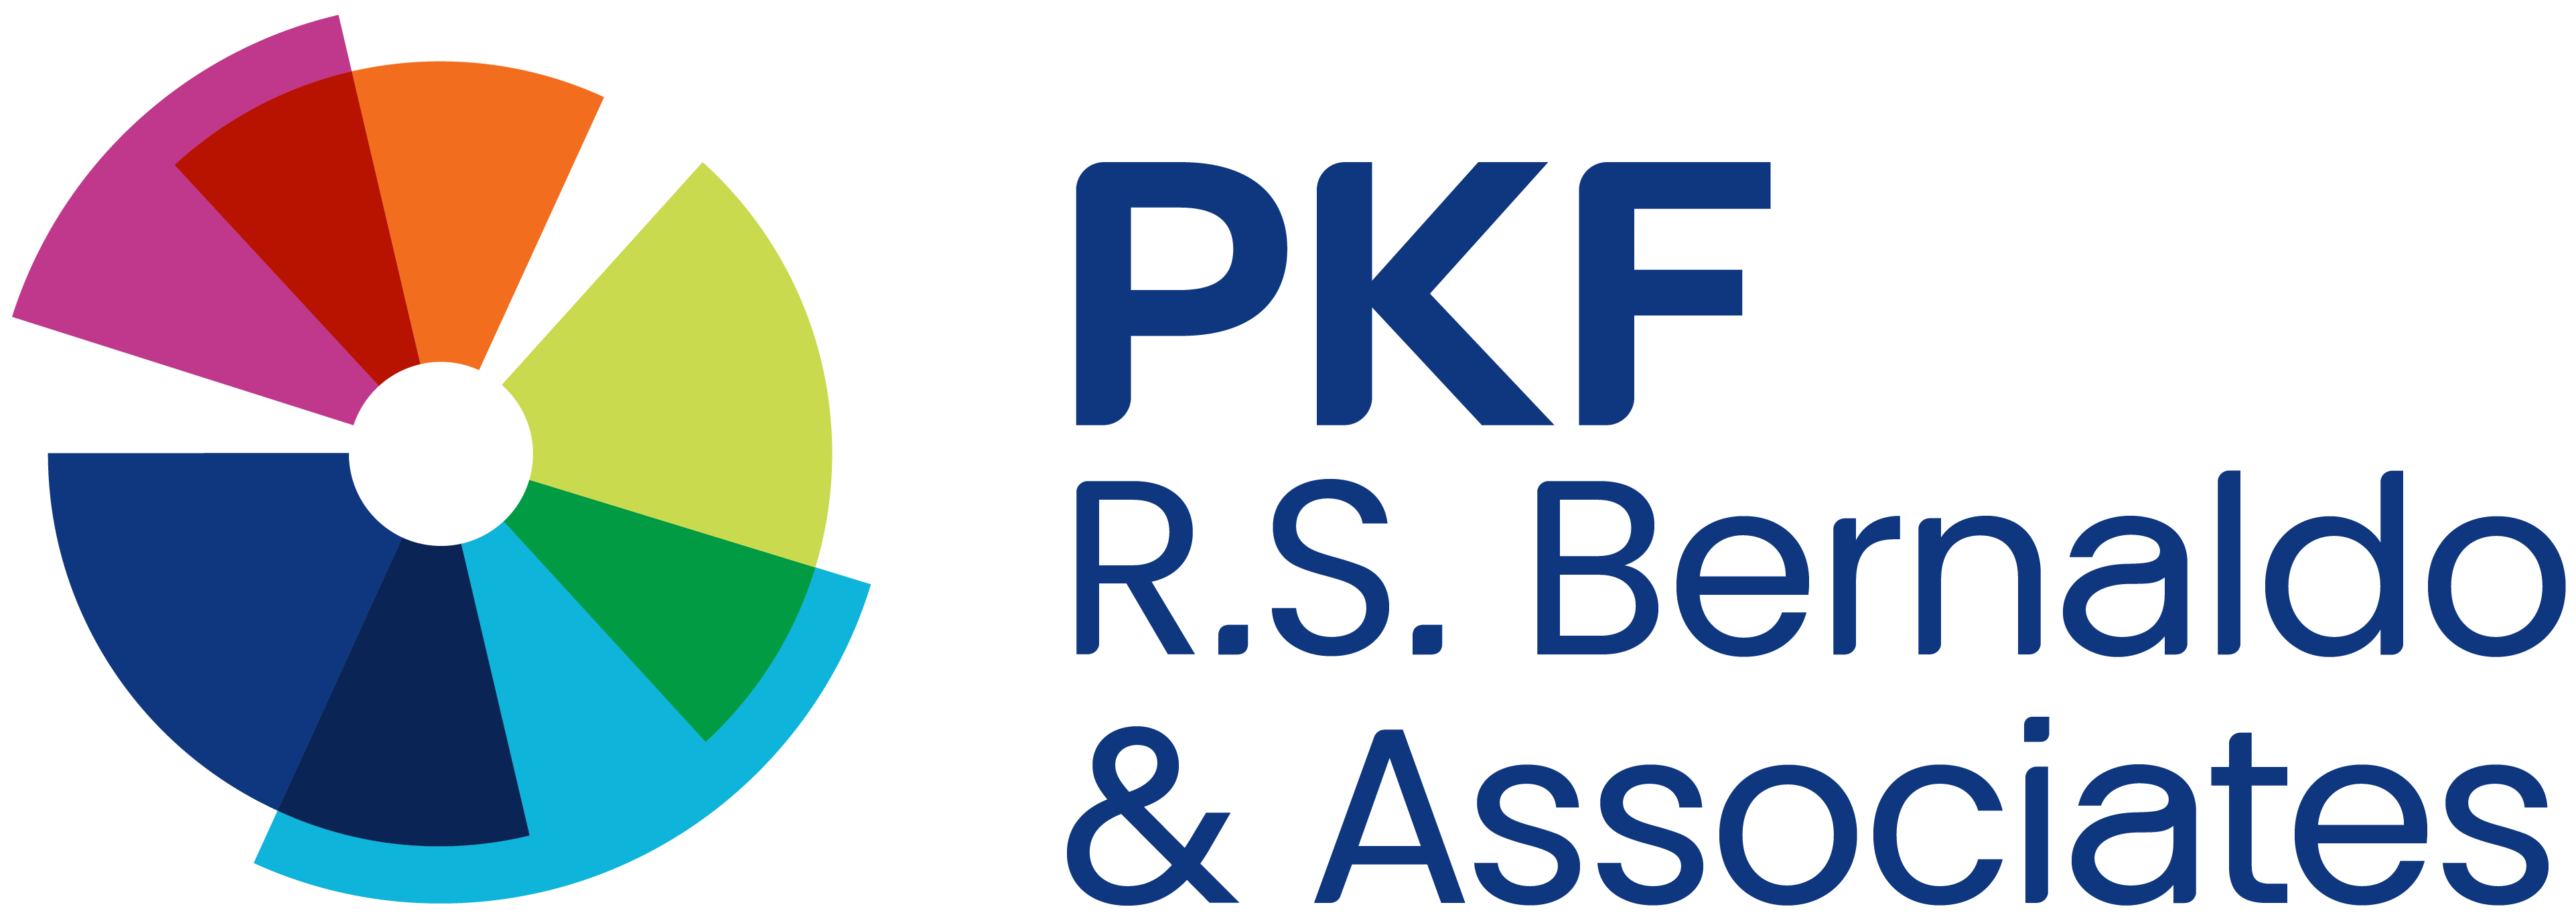 Footer logo PKF R.S. Bernaldo & Associates